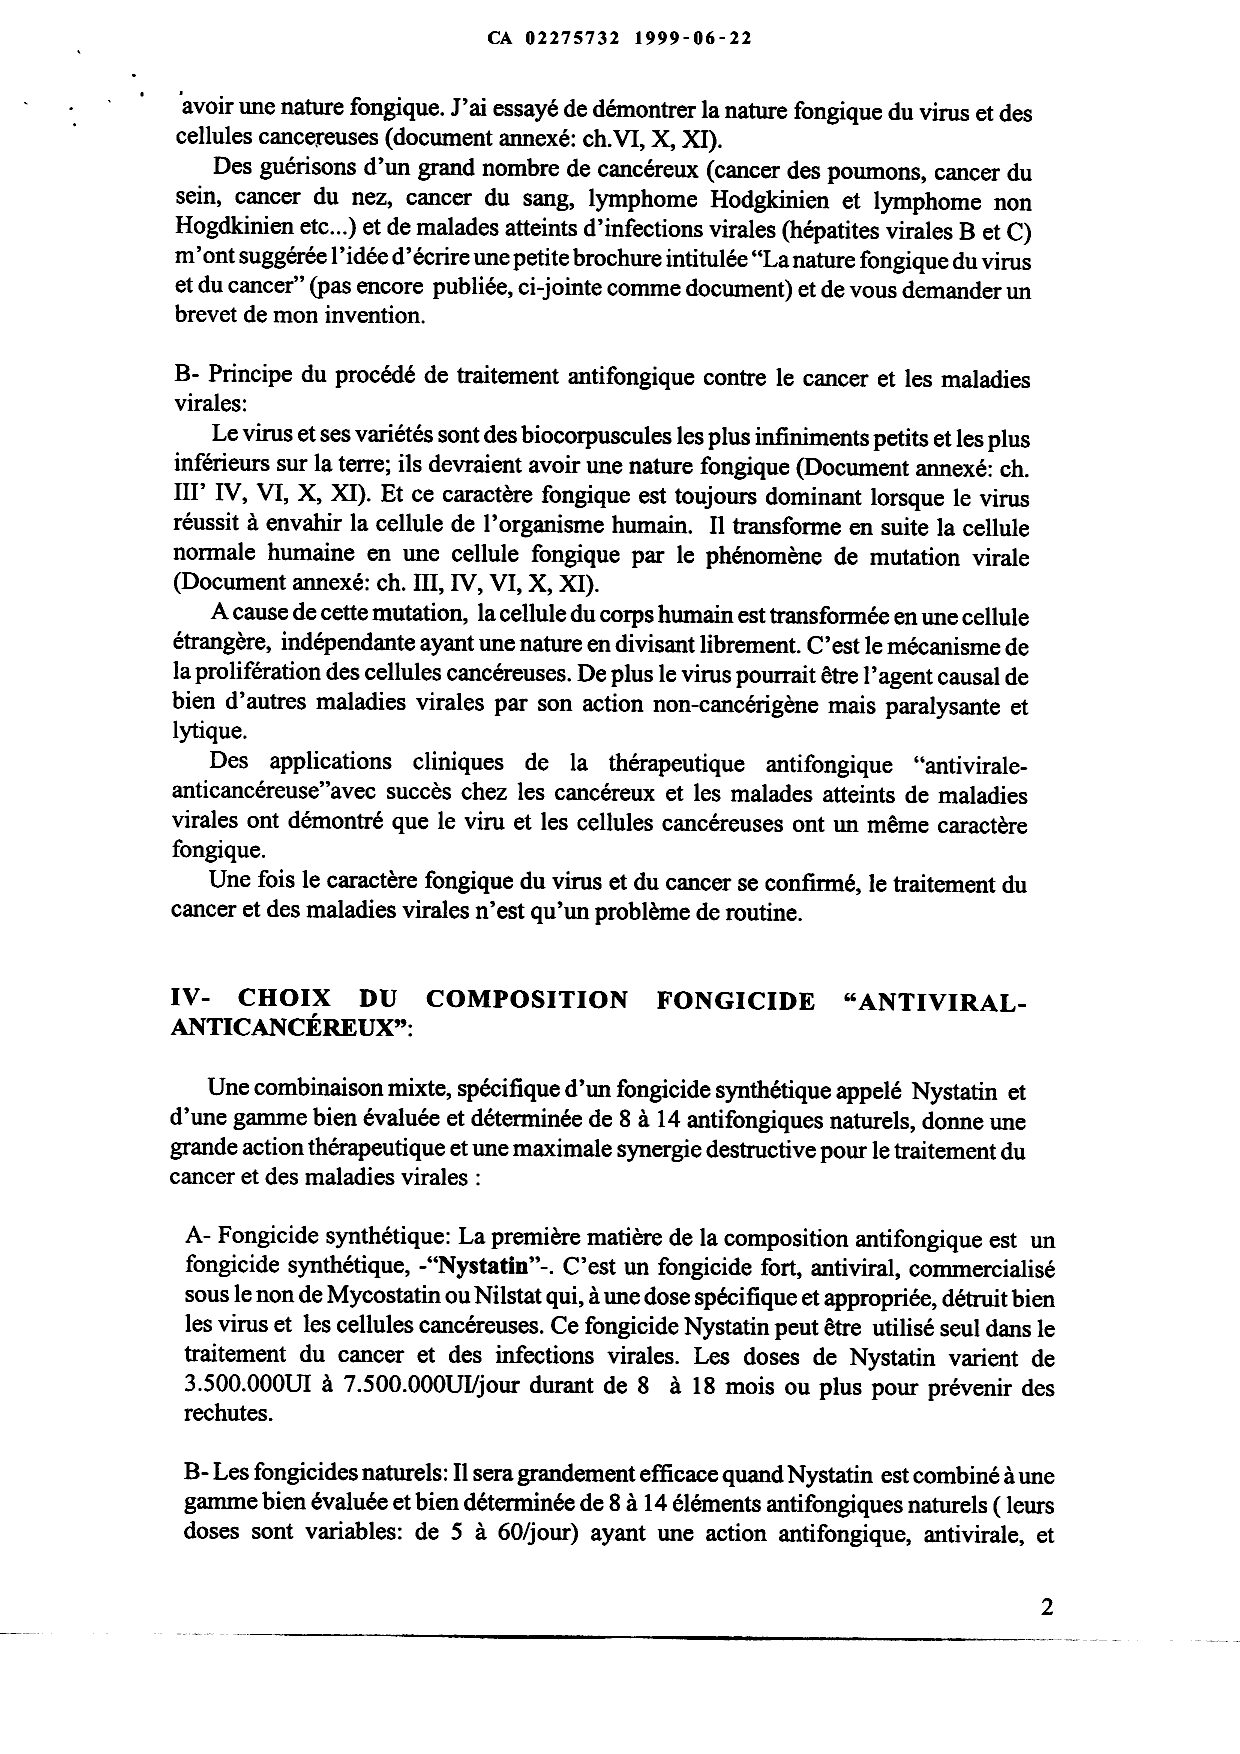 Canadian Patent Document 2275732. Description 19981222. Image 2 of 8